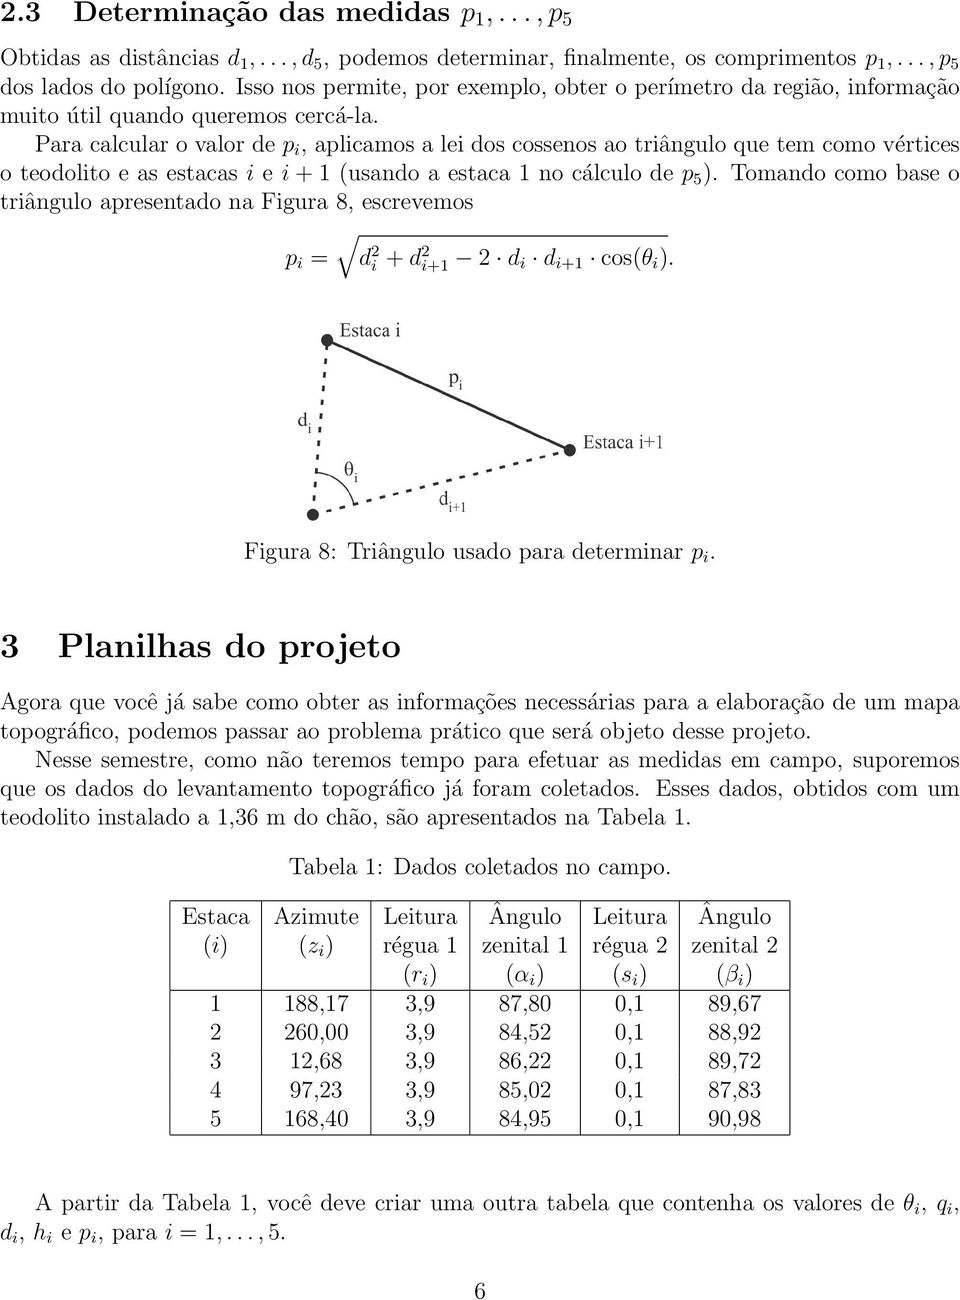 Para calcular o valor de p i, aplicamos a lei dos cossenos ao triângulo que tem como vértices o teodolito e as estacas i e i + 1 (usando a estaca 1 no cálculo de p 5 ).